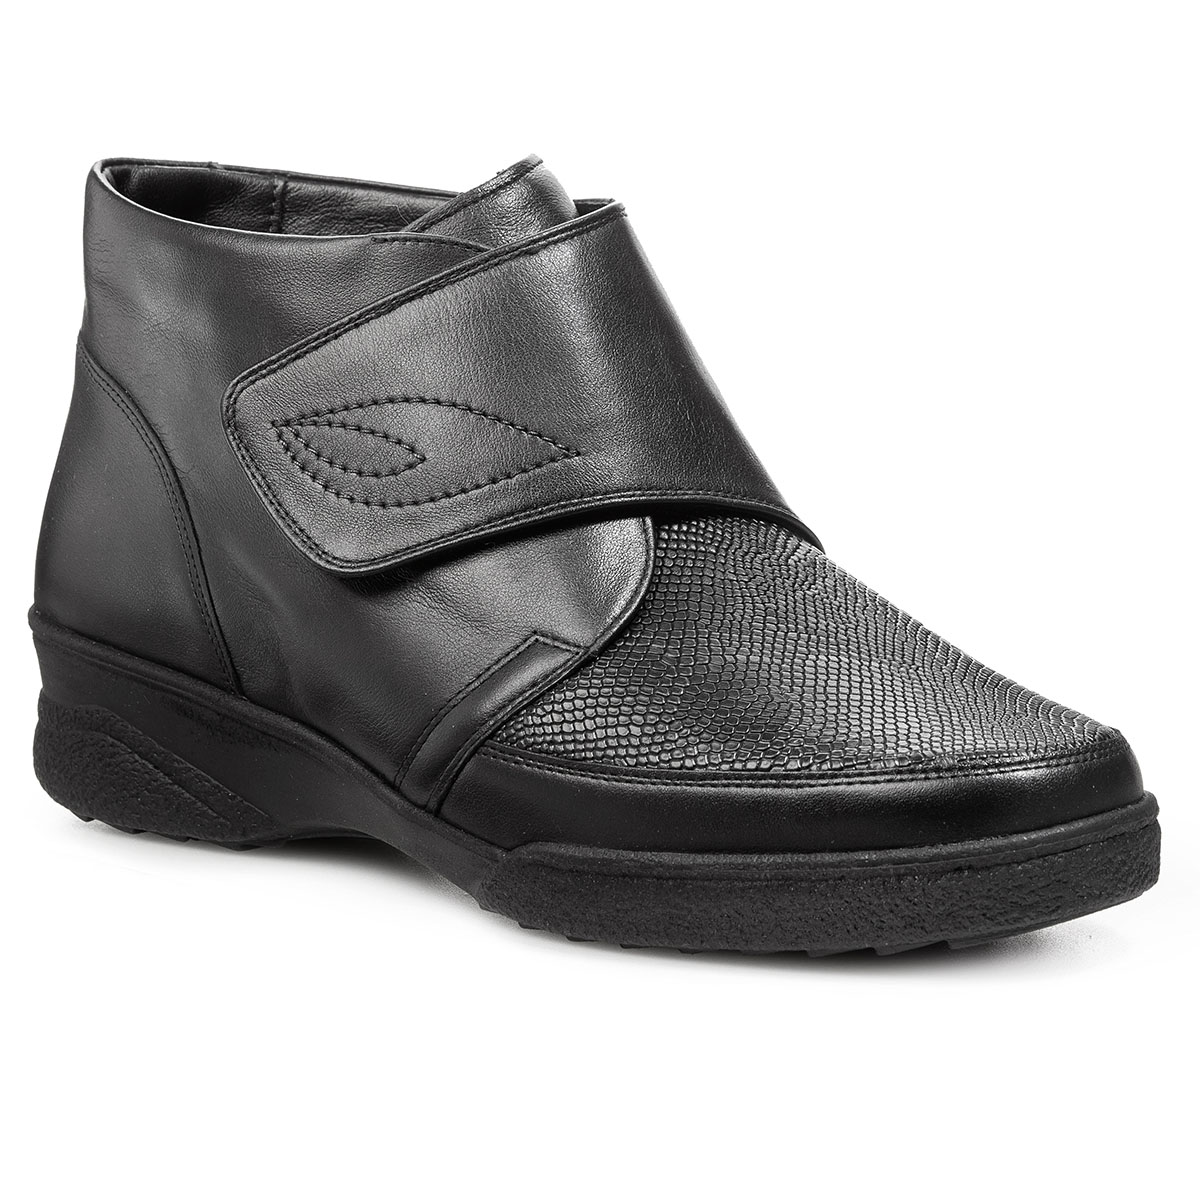 Женские ботинки Solidus Hedda Stiefel (Solicare Soft) черные полуботинки демисезонные женские solidus hedda solicare soft чёрные